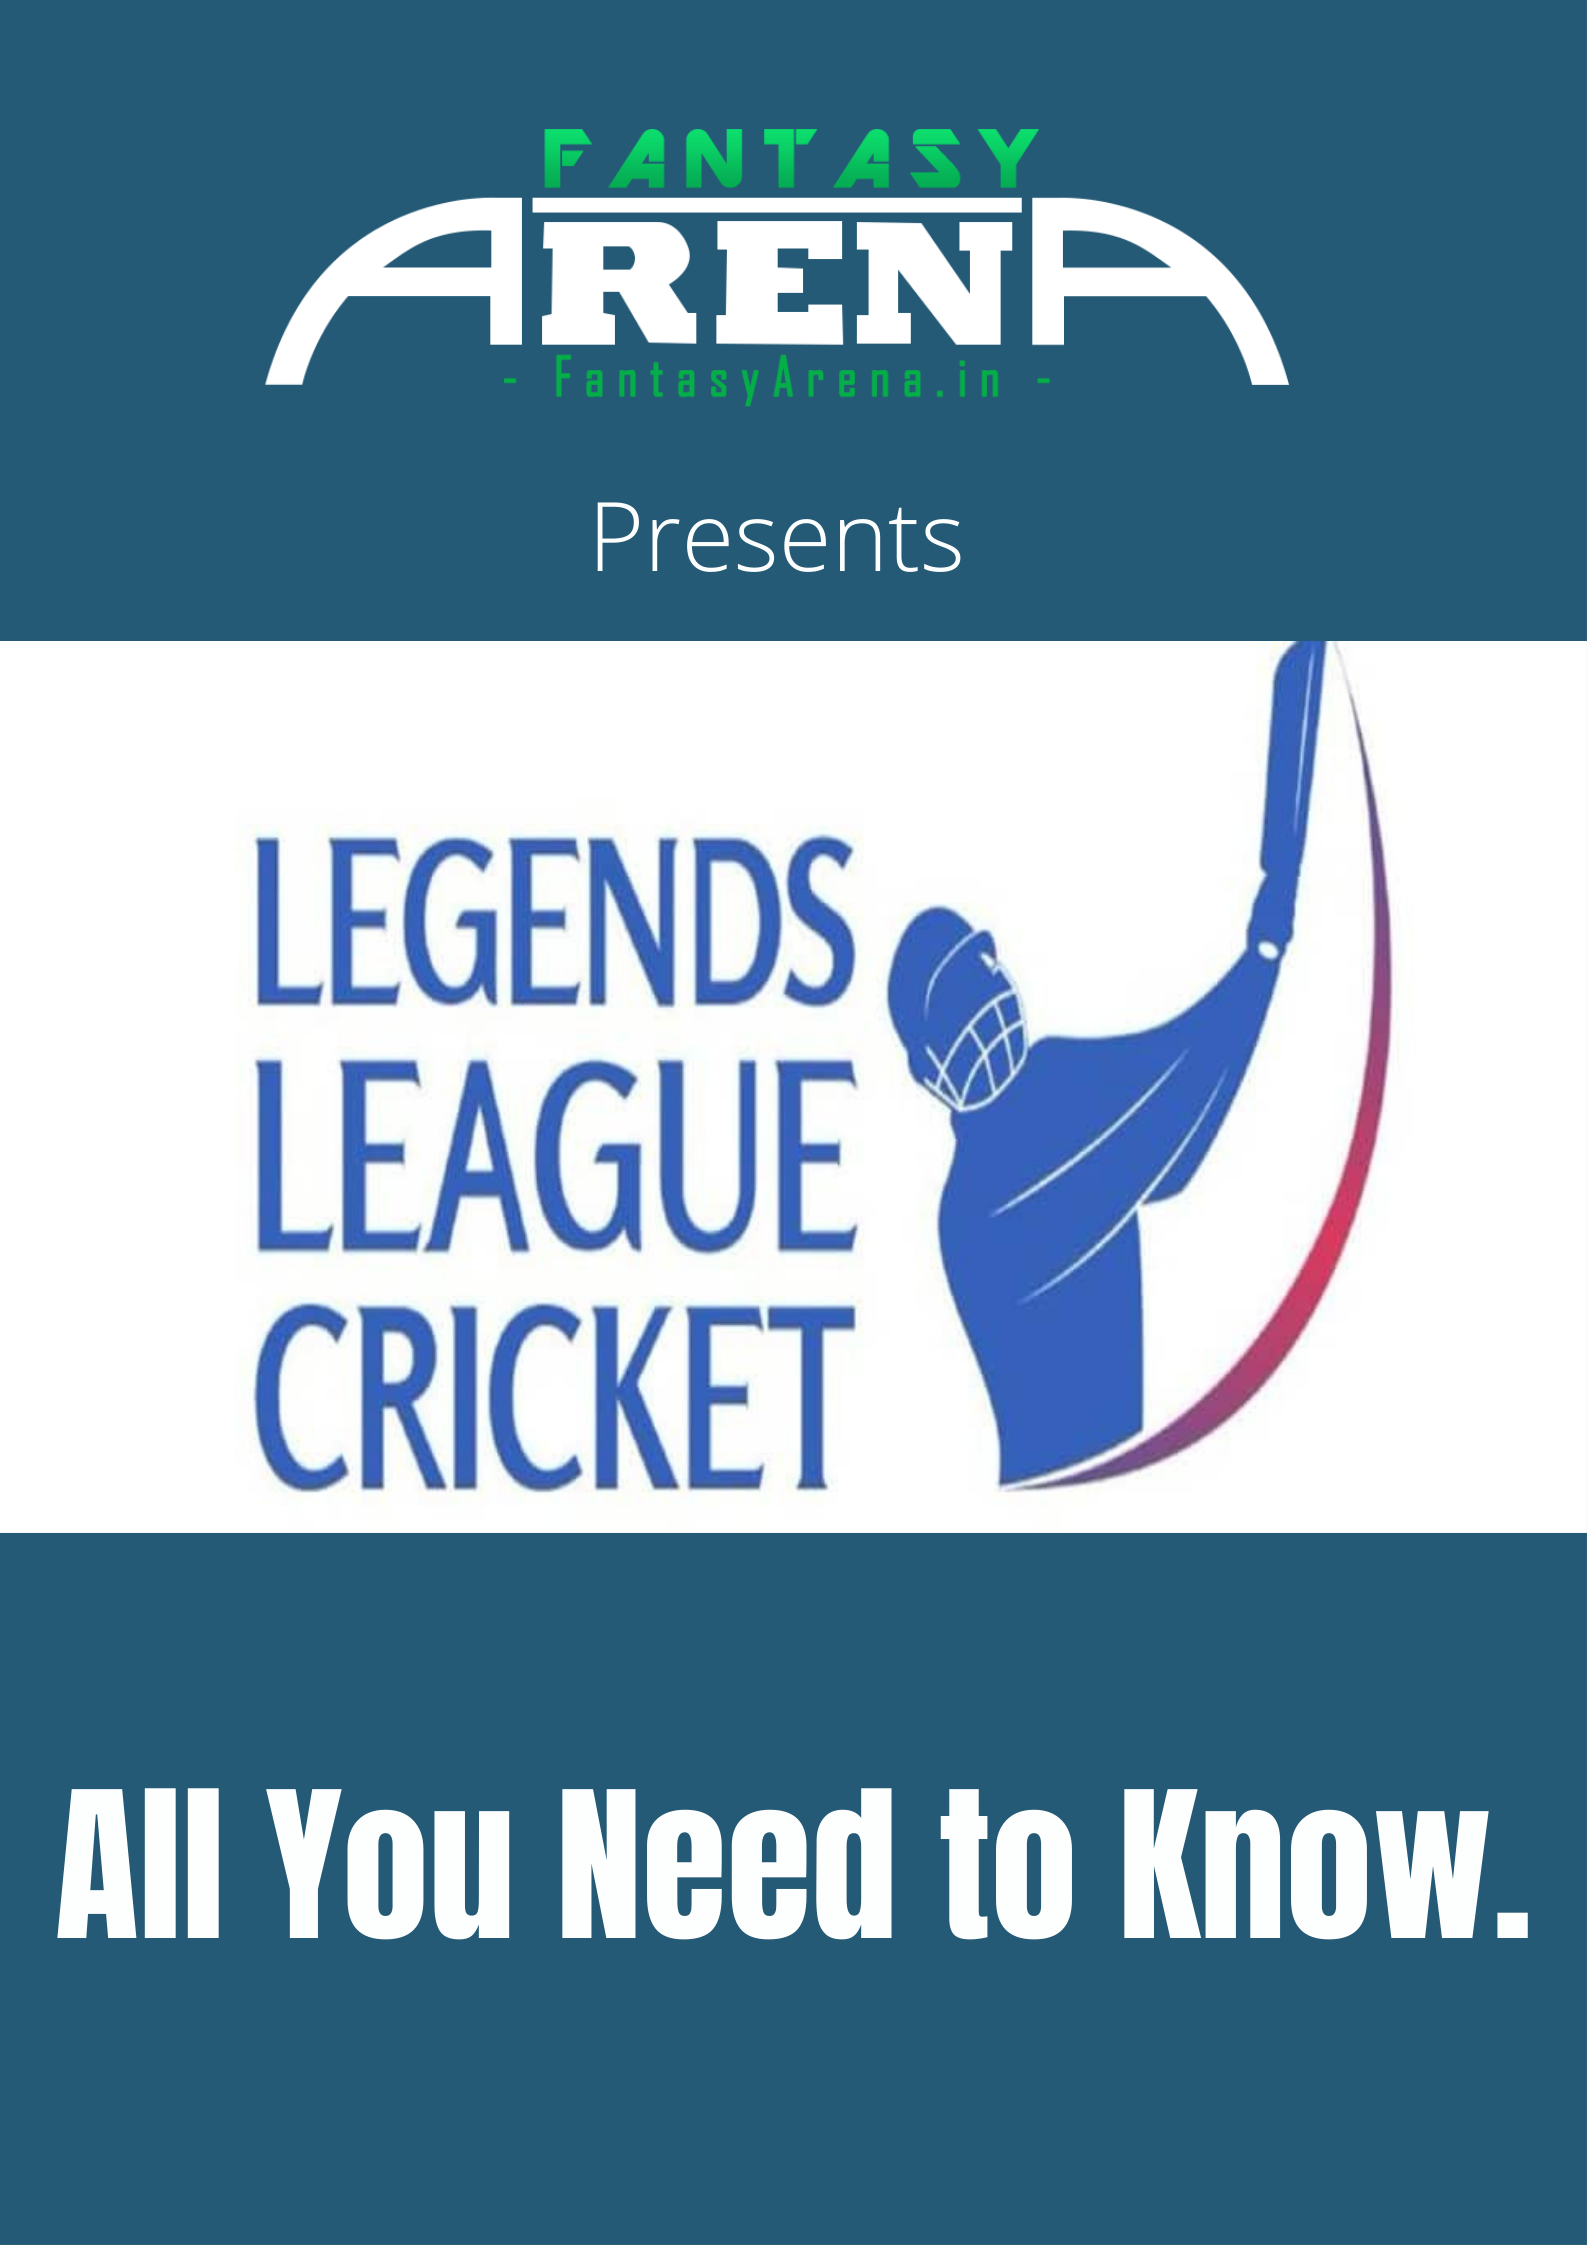 Legends League Cricket.